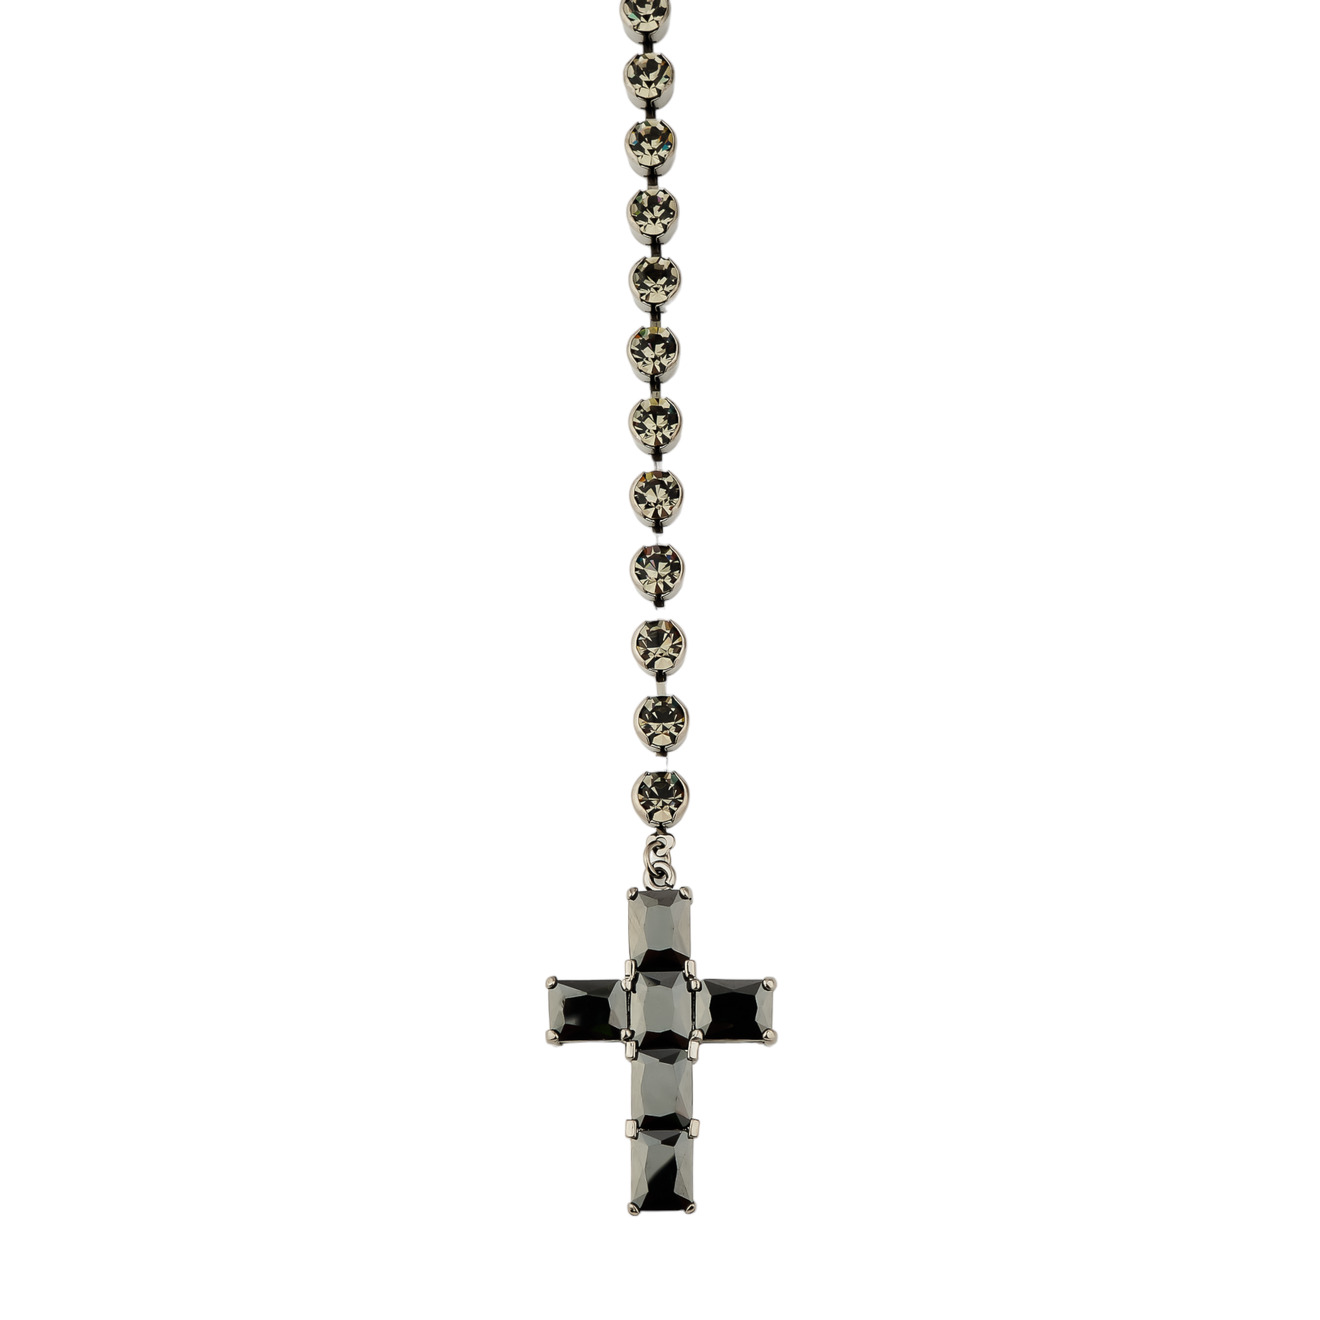 Herald Percy Сотуар с кристаллами и подвеской крестом черного цвета herald percy чокер с белыми кристаллами и крестом